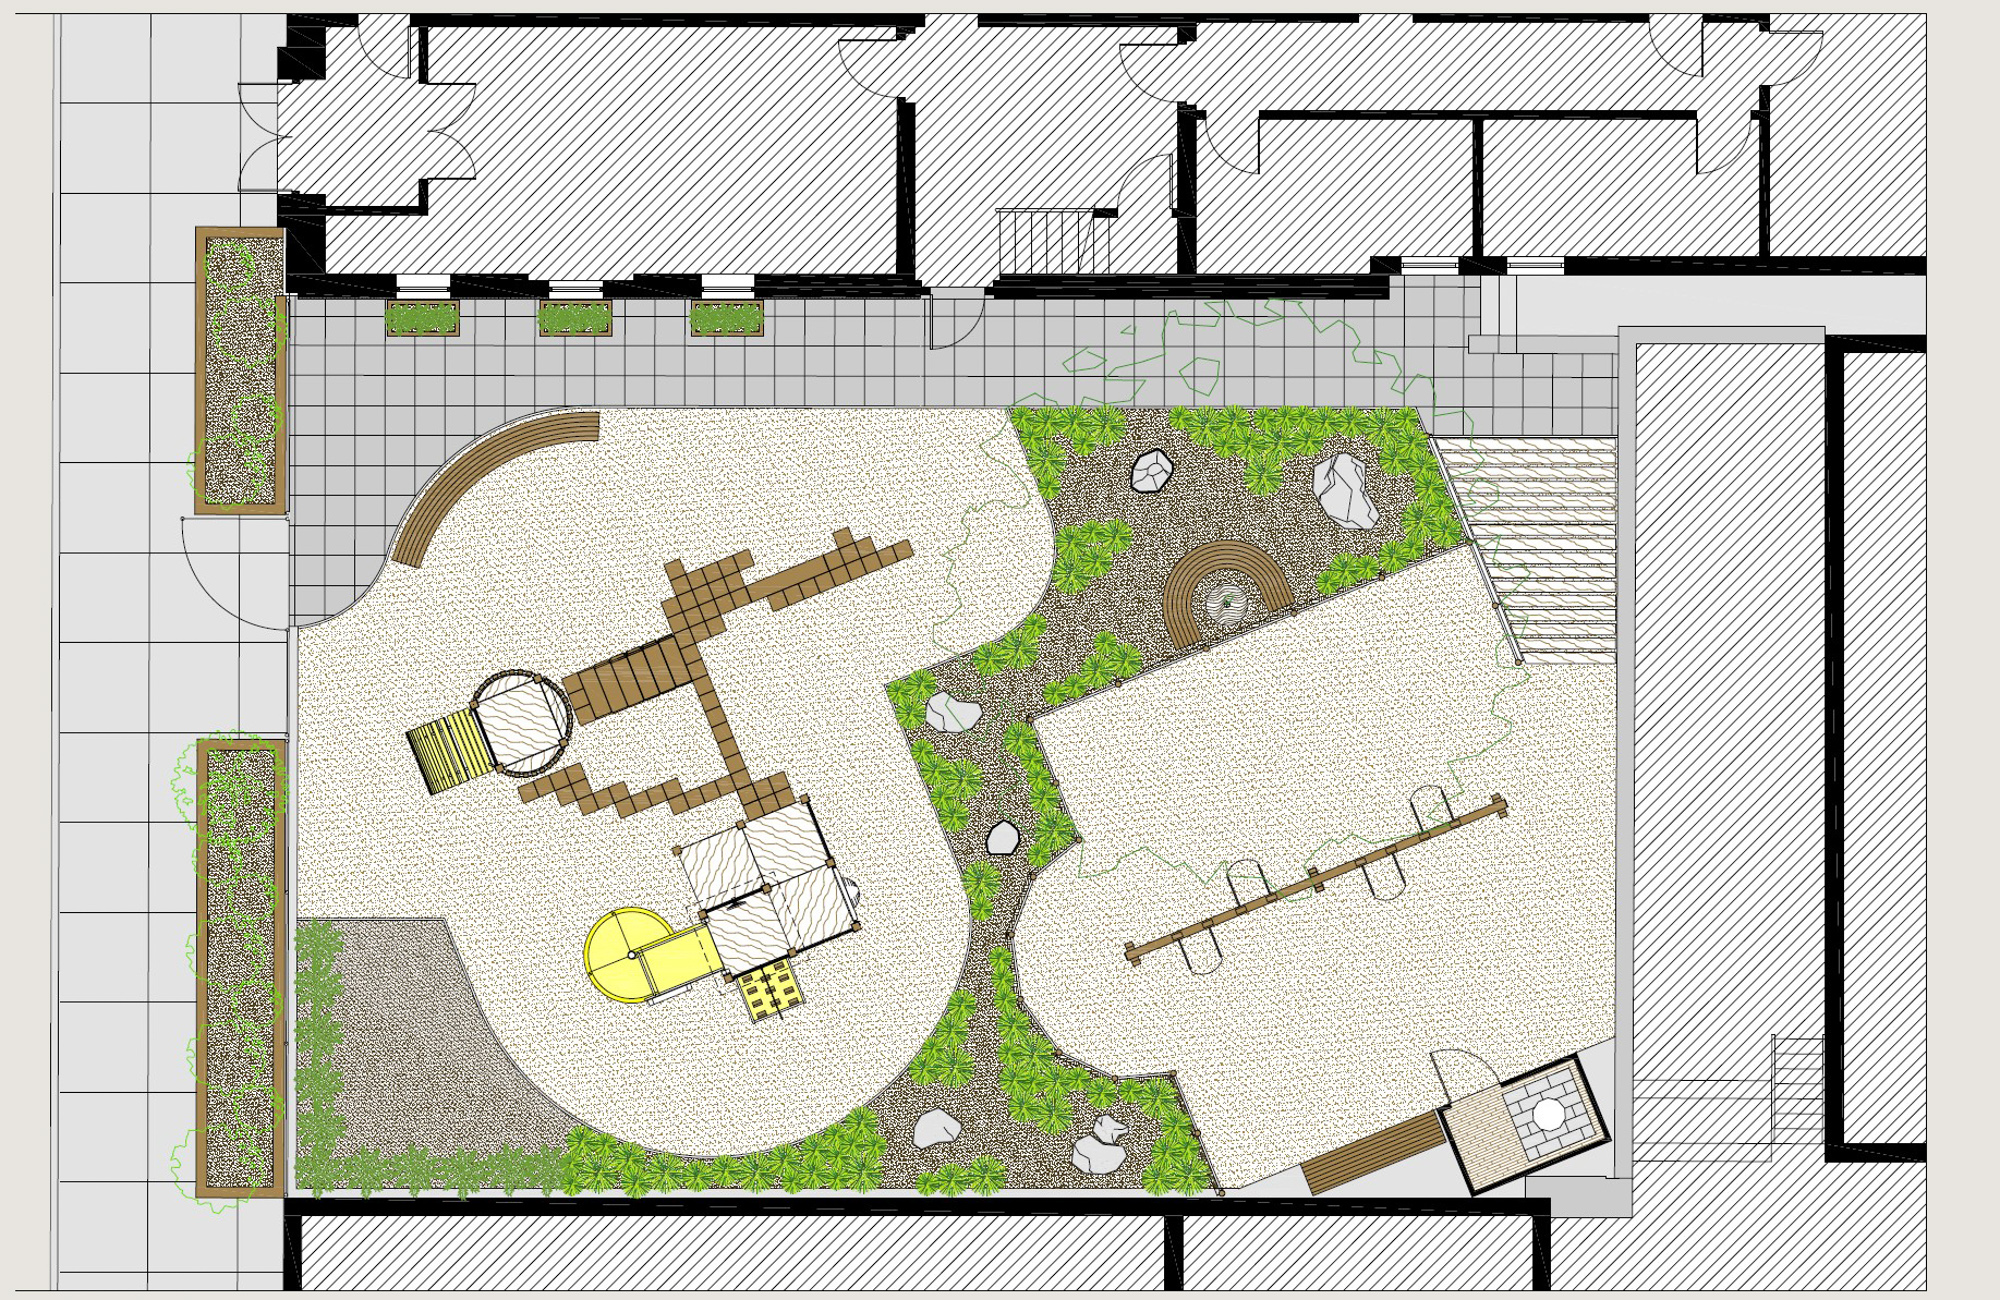 Saint Ann's School, Willow Place - Pre-school Landscaped Play Yard (In Progress)